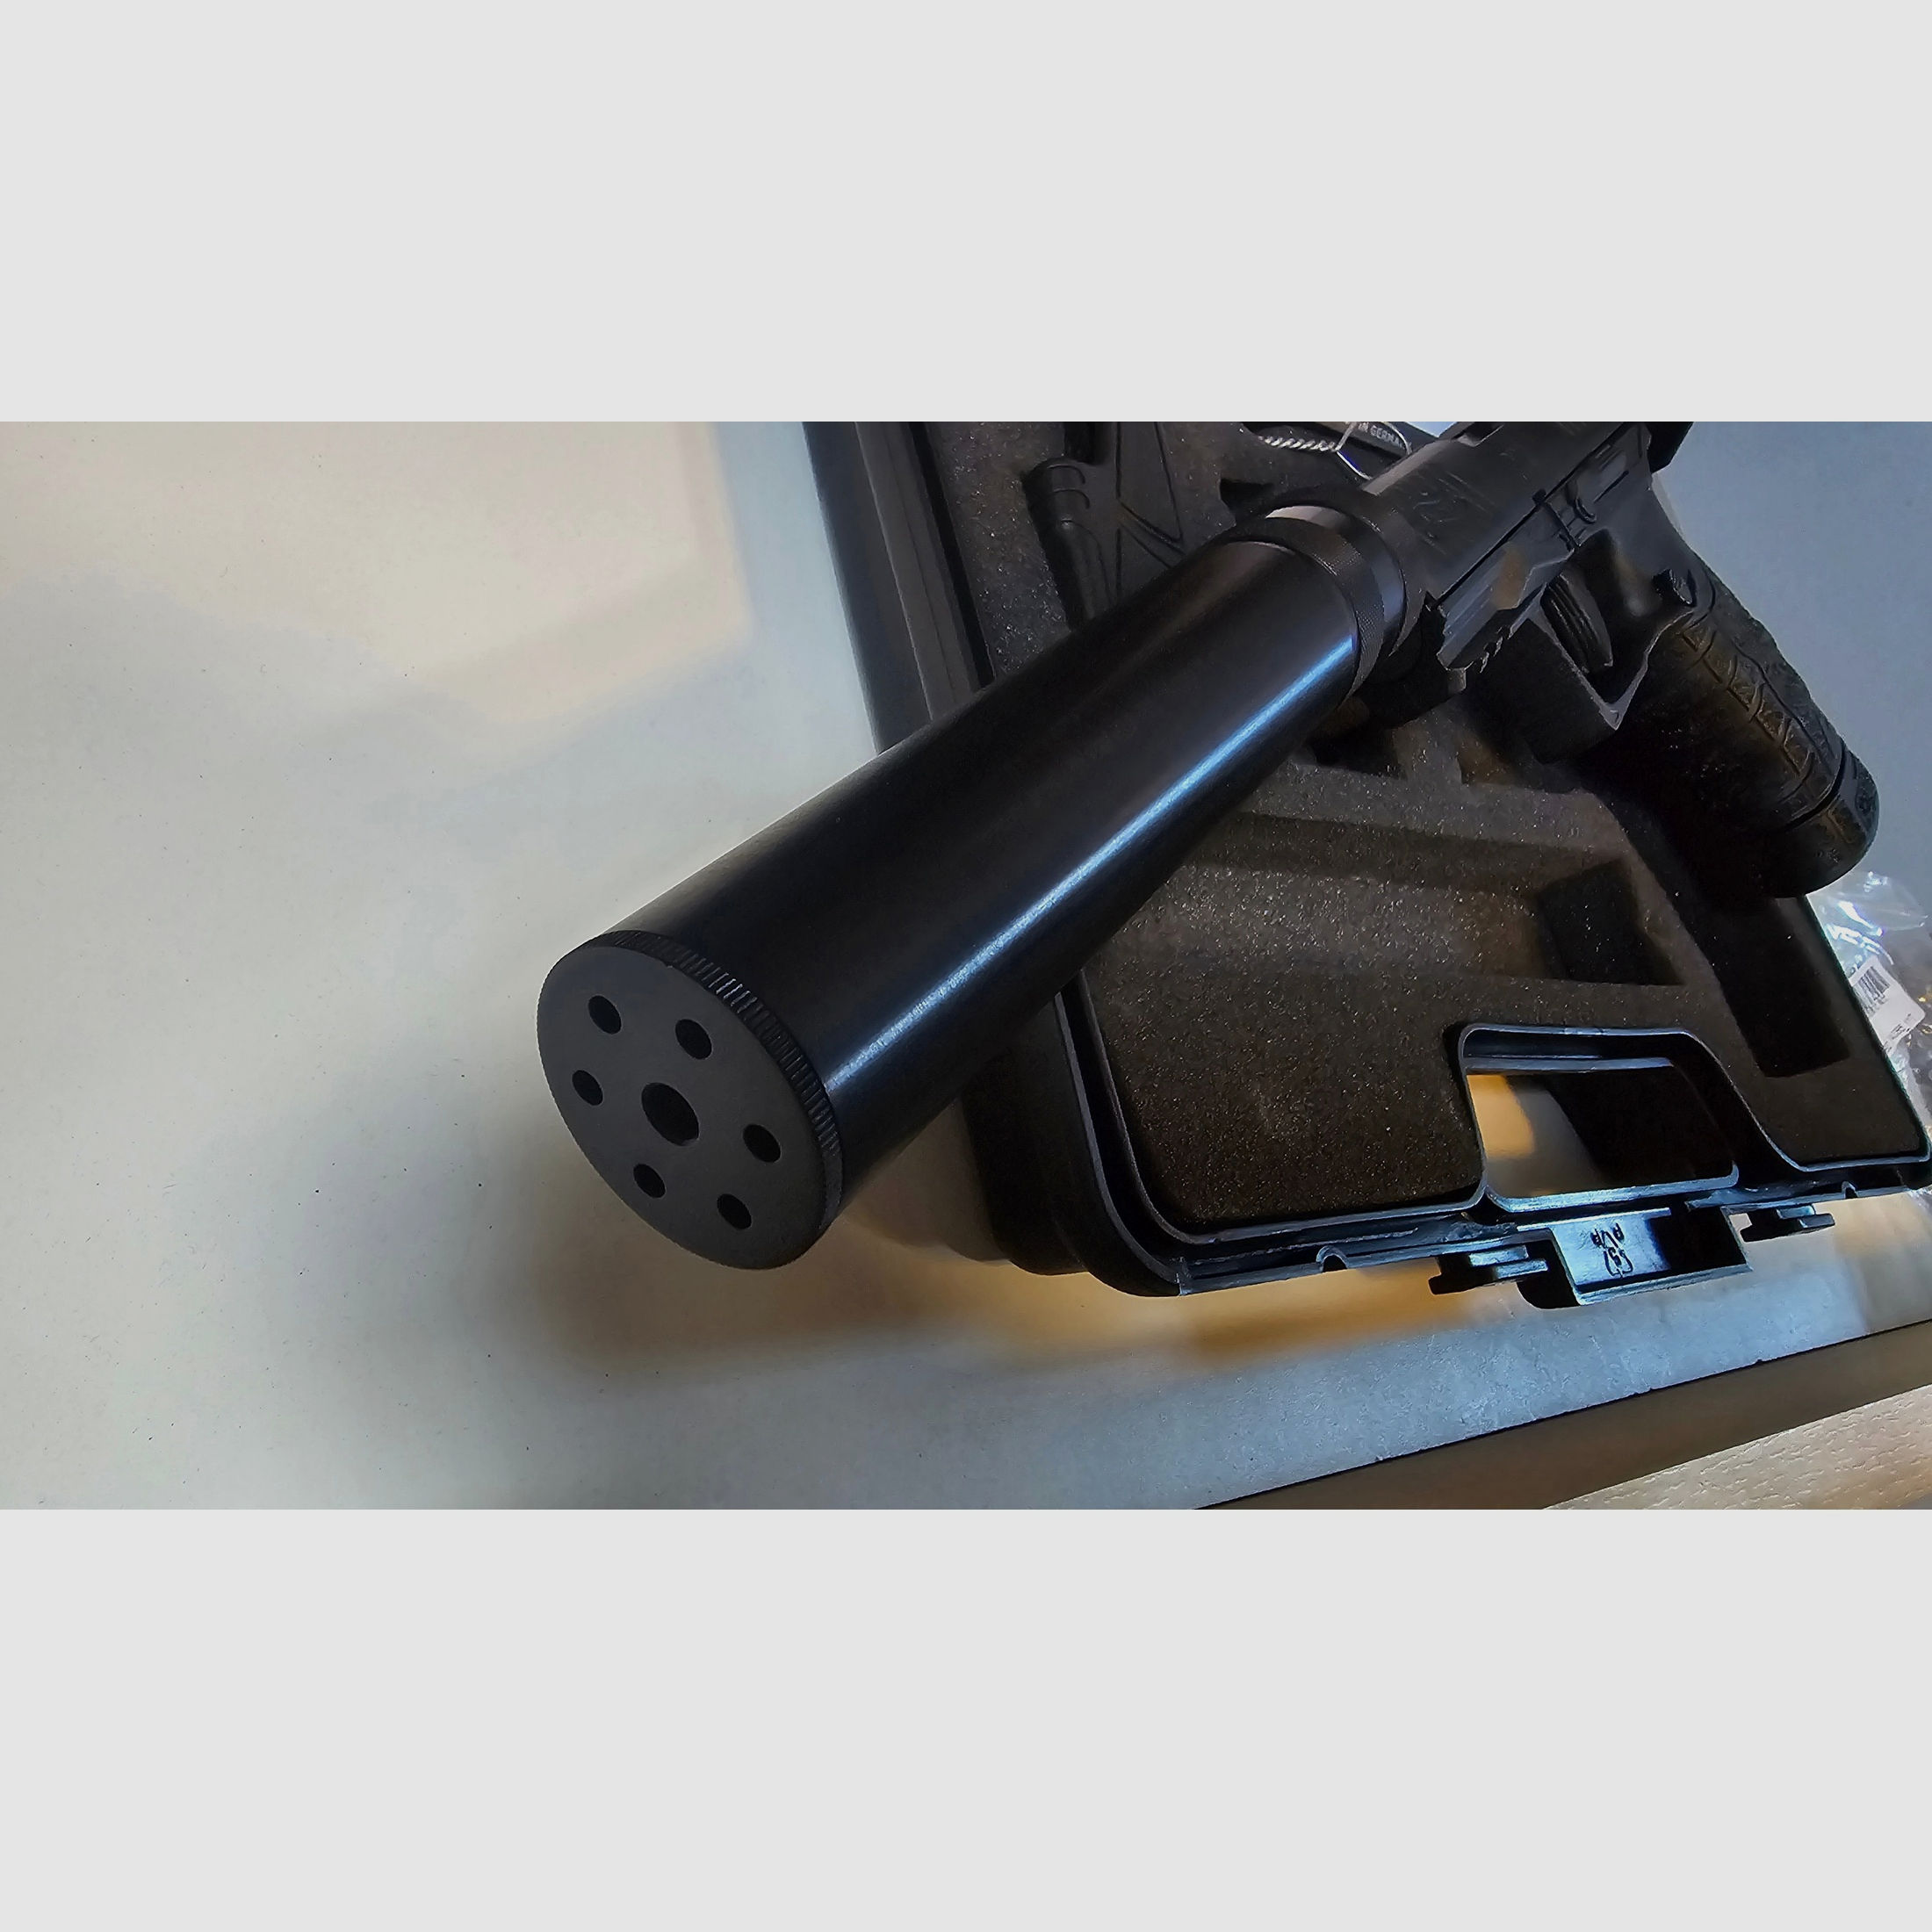 Walther PPQ M2 9mm Navi Kit mit Koffer und Schalldämpfer NEUWERTIG UNBENUTZT